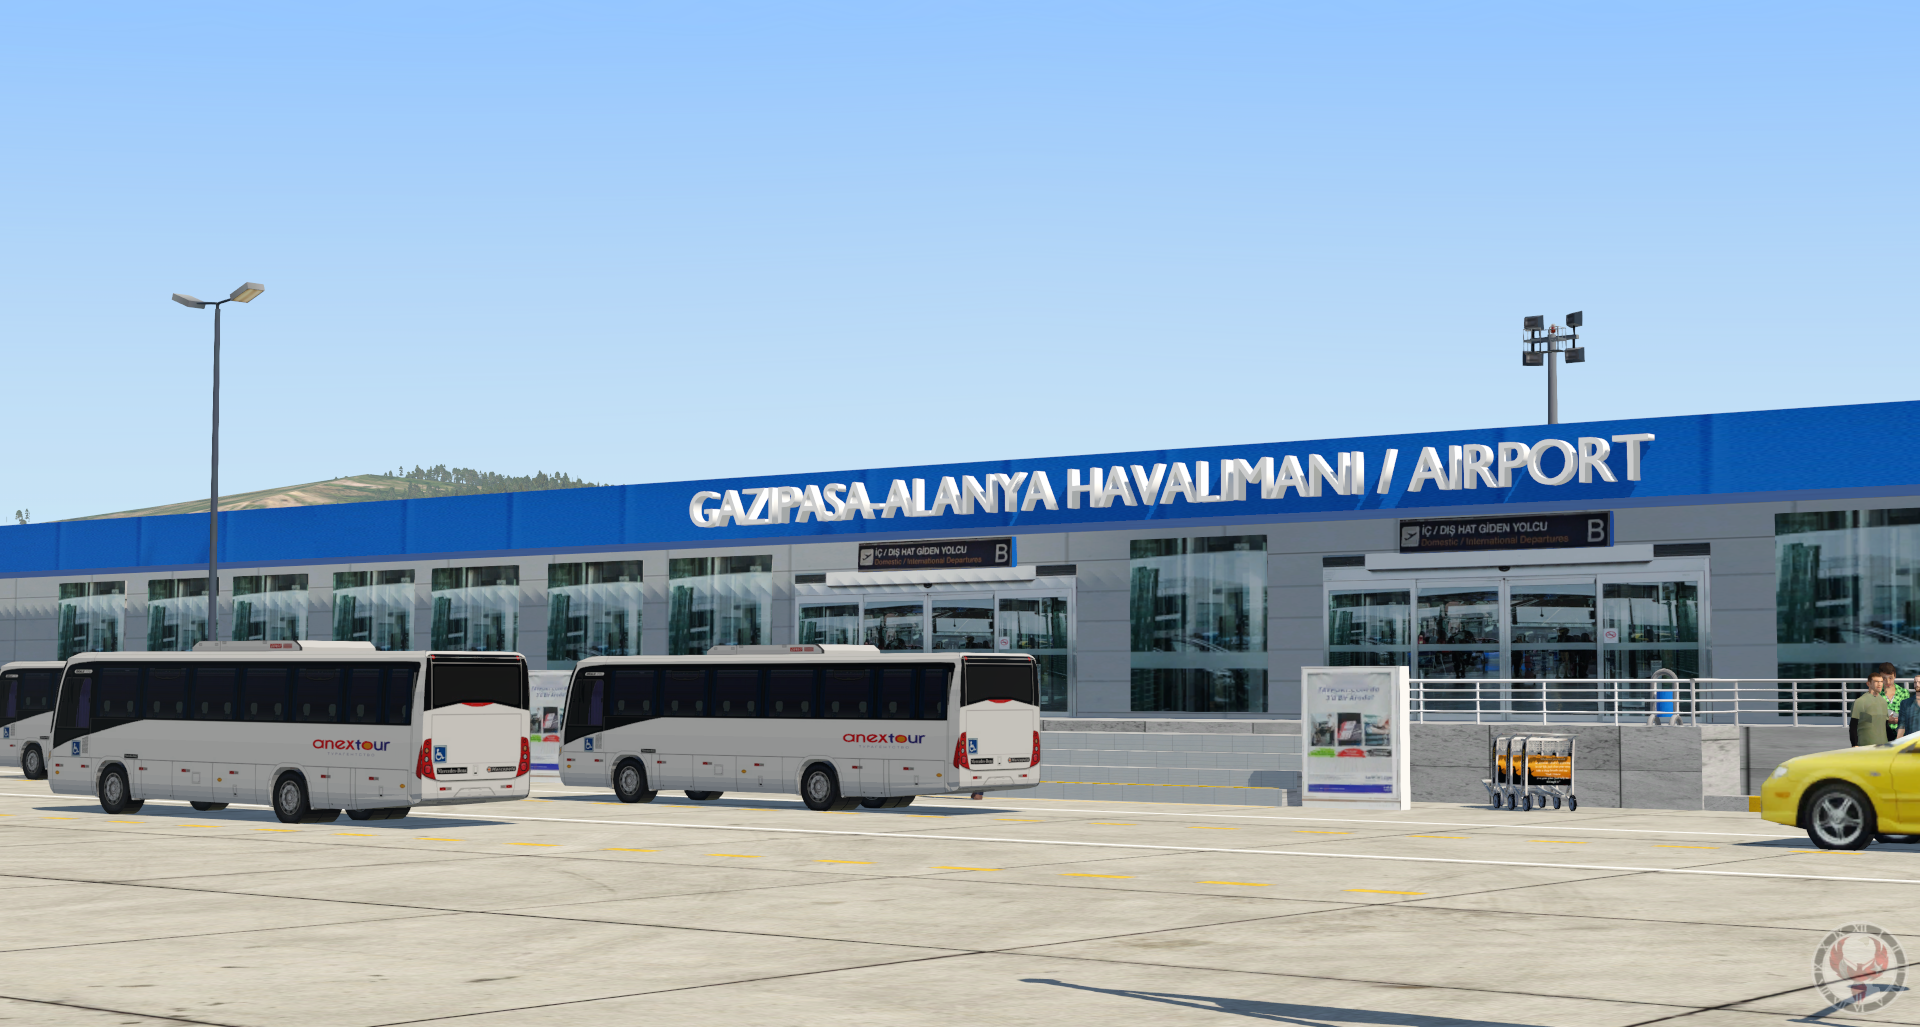 Аэропорт аланья турция. Аэропорт Анталья-Газипаша-Аланья. Аэропорт Gazipasa Alanya. Турция аэропорт гамирпаша. Алания аэропорт Газипаша внутри.